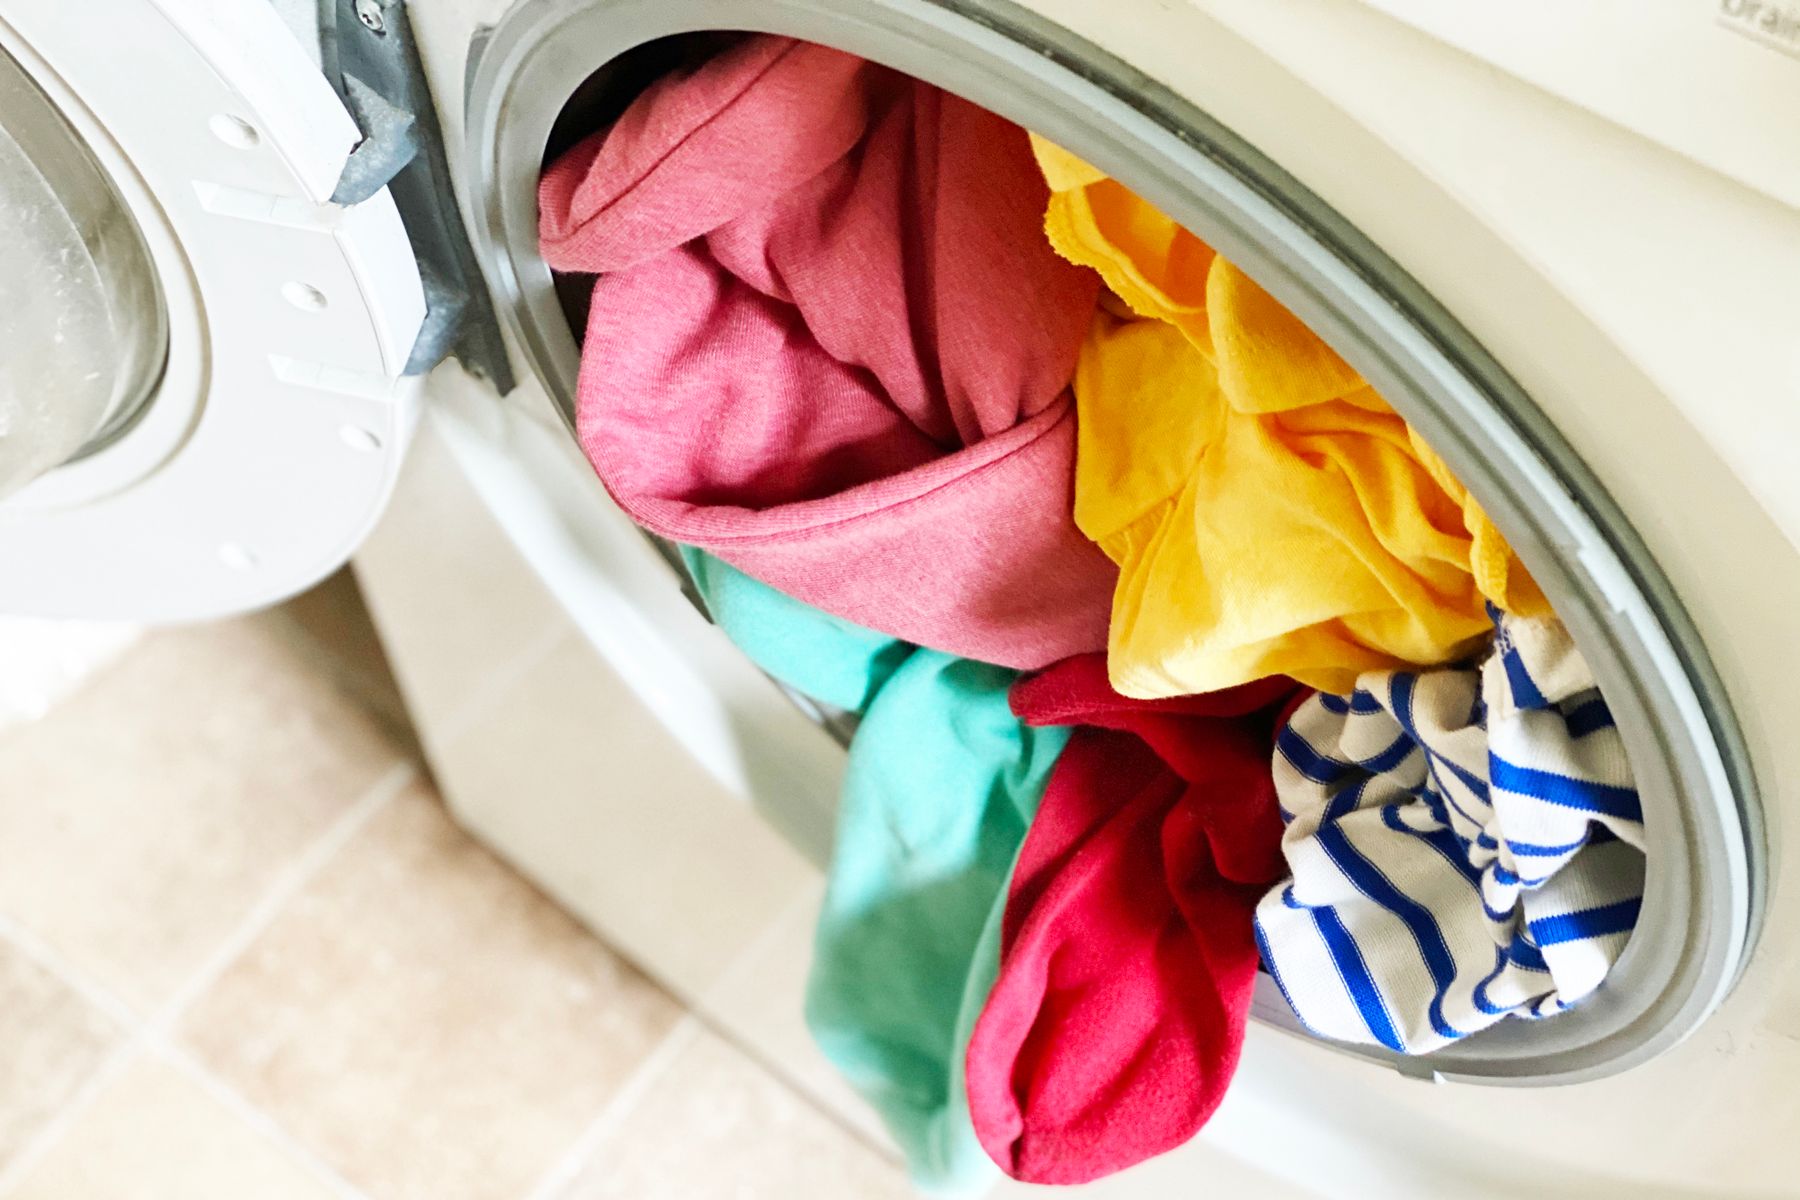 Как стирать рюкзак в стиральной машине и вручную - рекомендации по чистке, в том числе для школьных портфелей с ортопедической спинкой